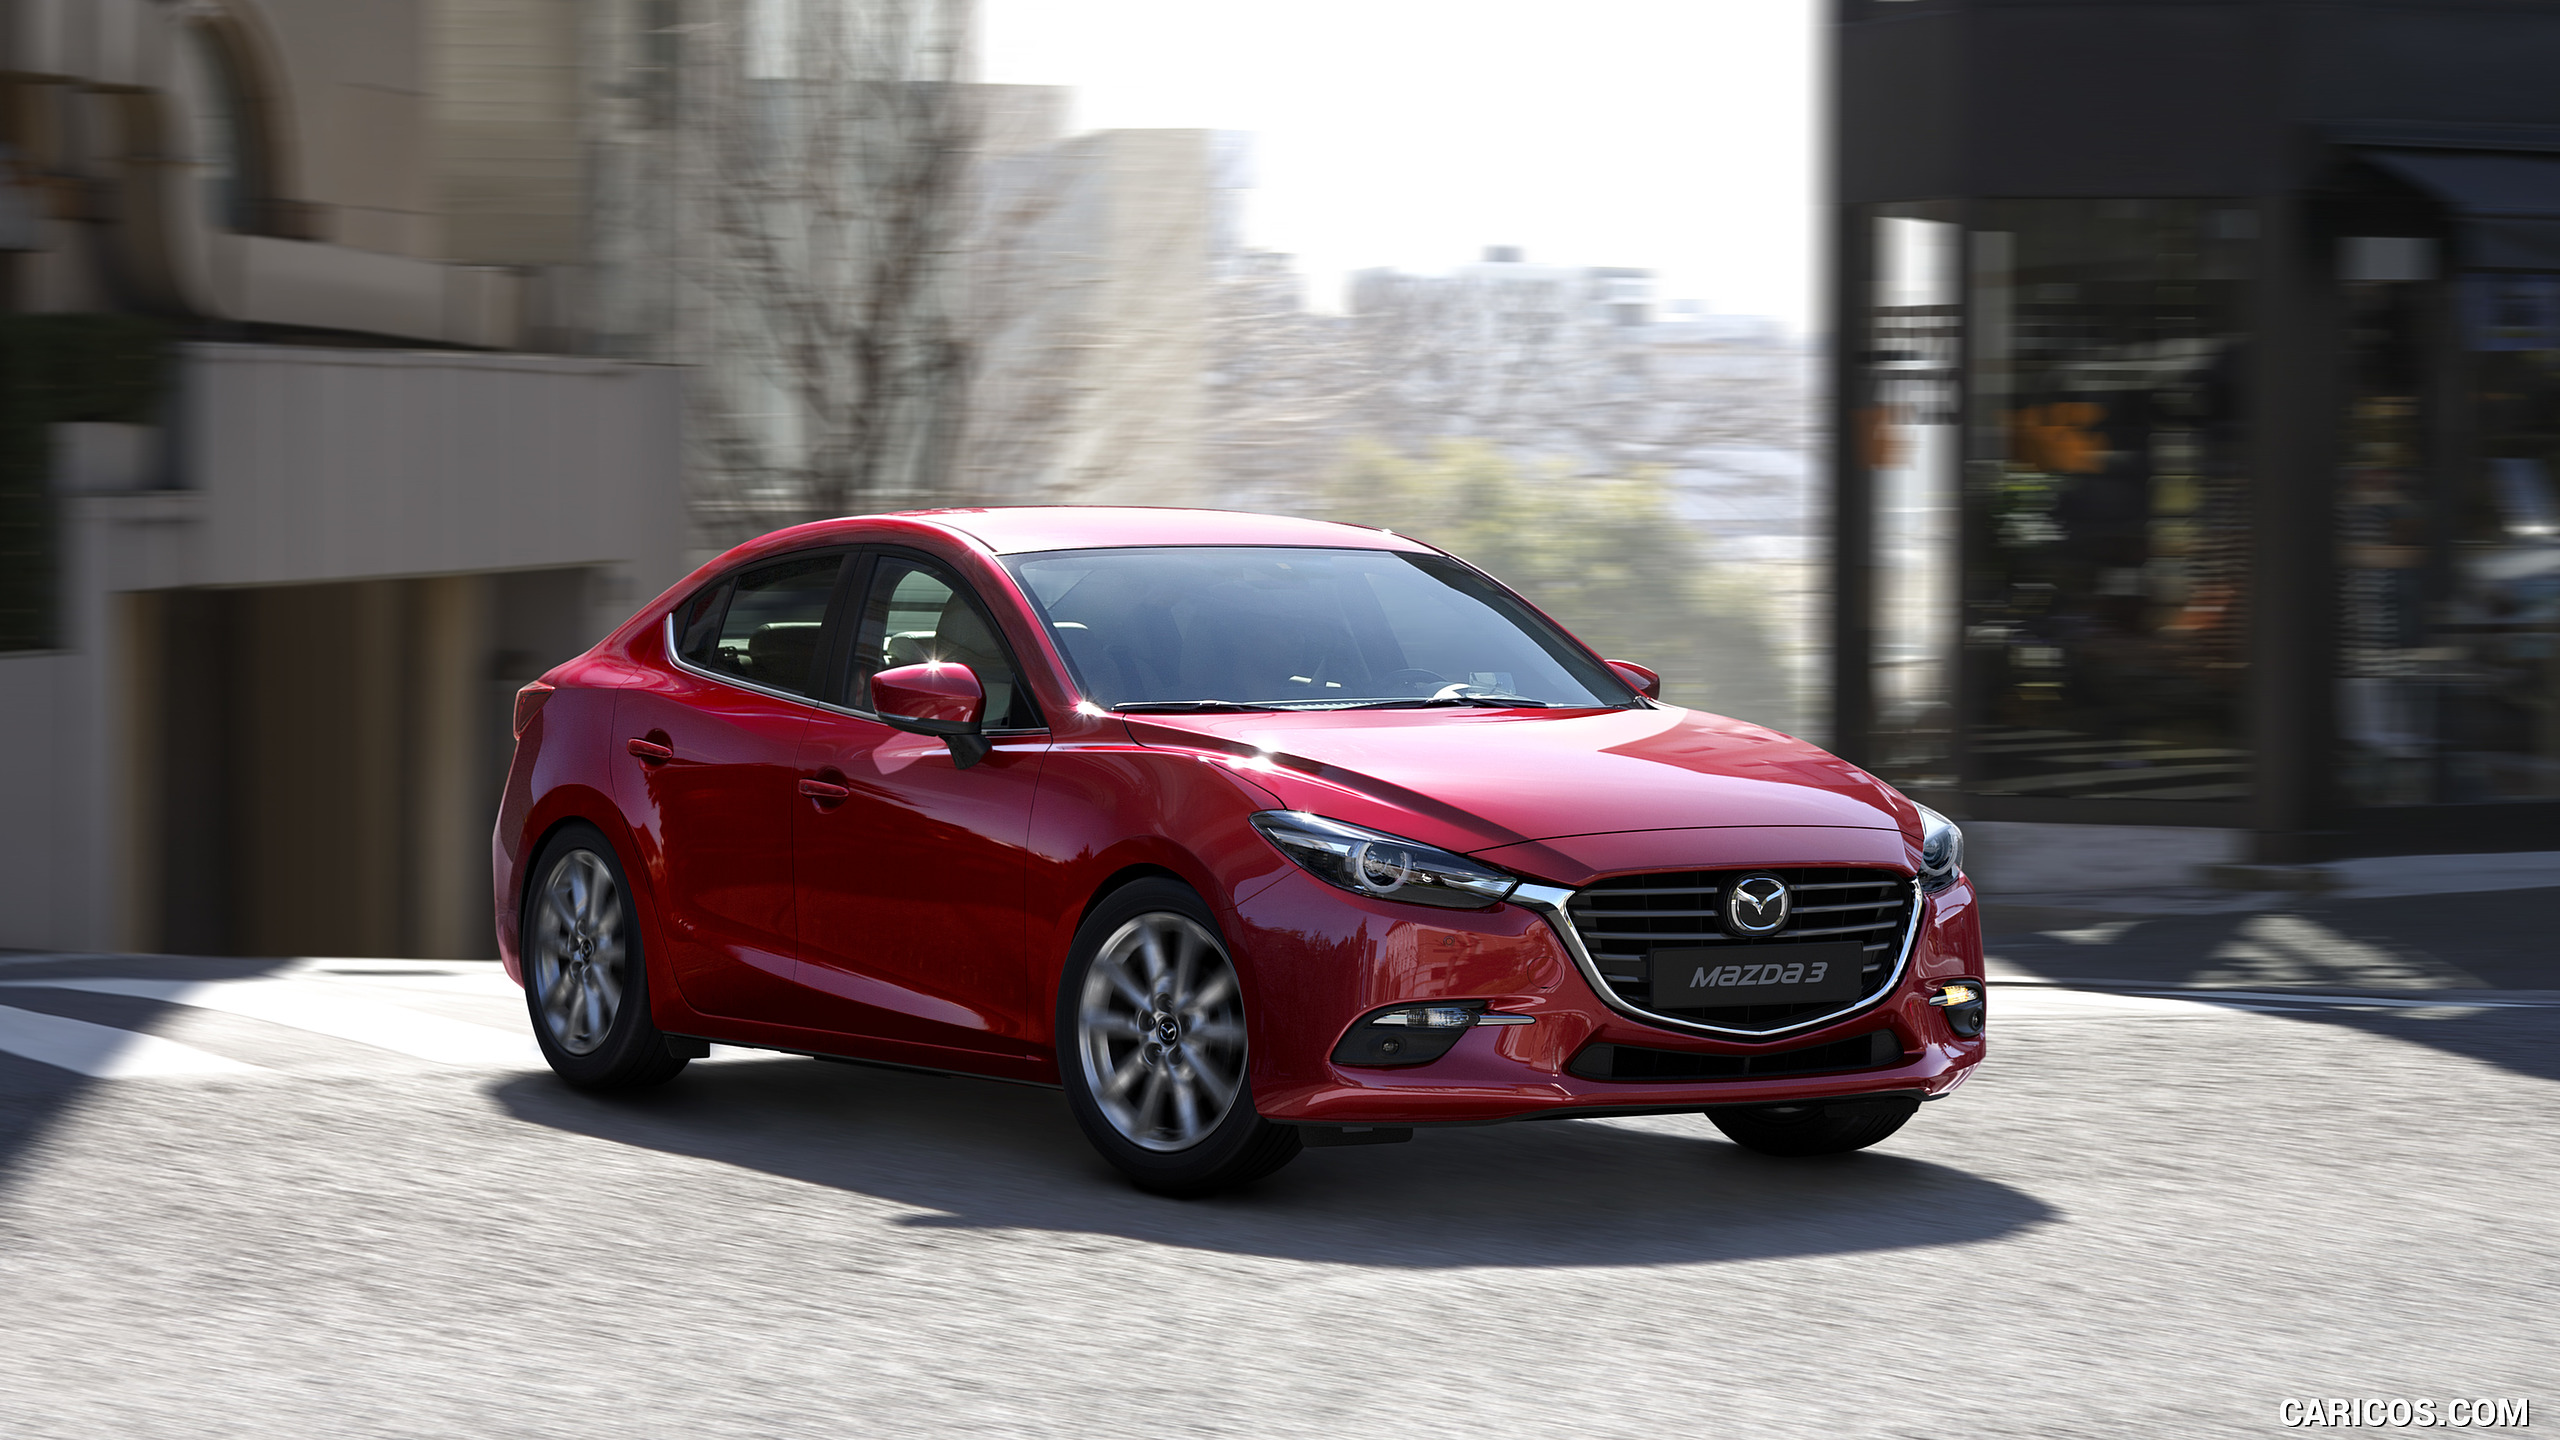 2017 Mazda 3 Sedan - Front Three-Quarter, #1 of 13